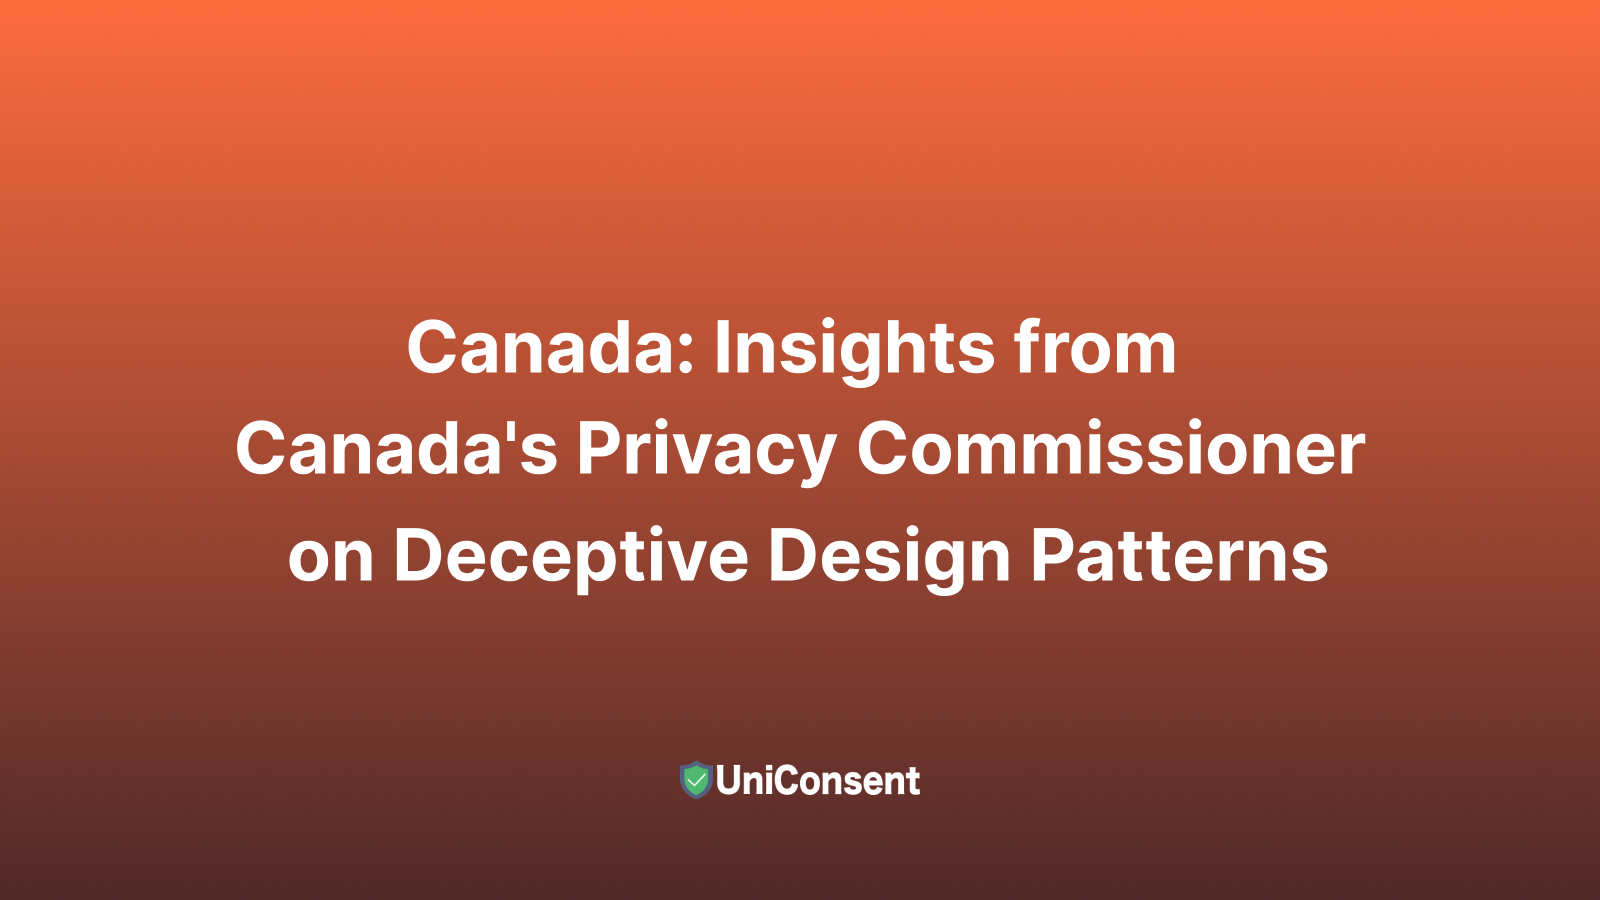 Canada: Aperçu du Commissaire à la protection de la vie privée du Canada sur la lutte contre les motifs de conception trompeurs